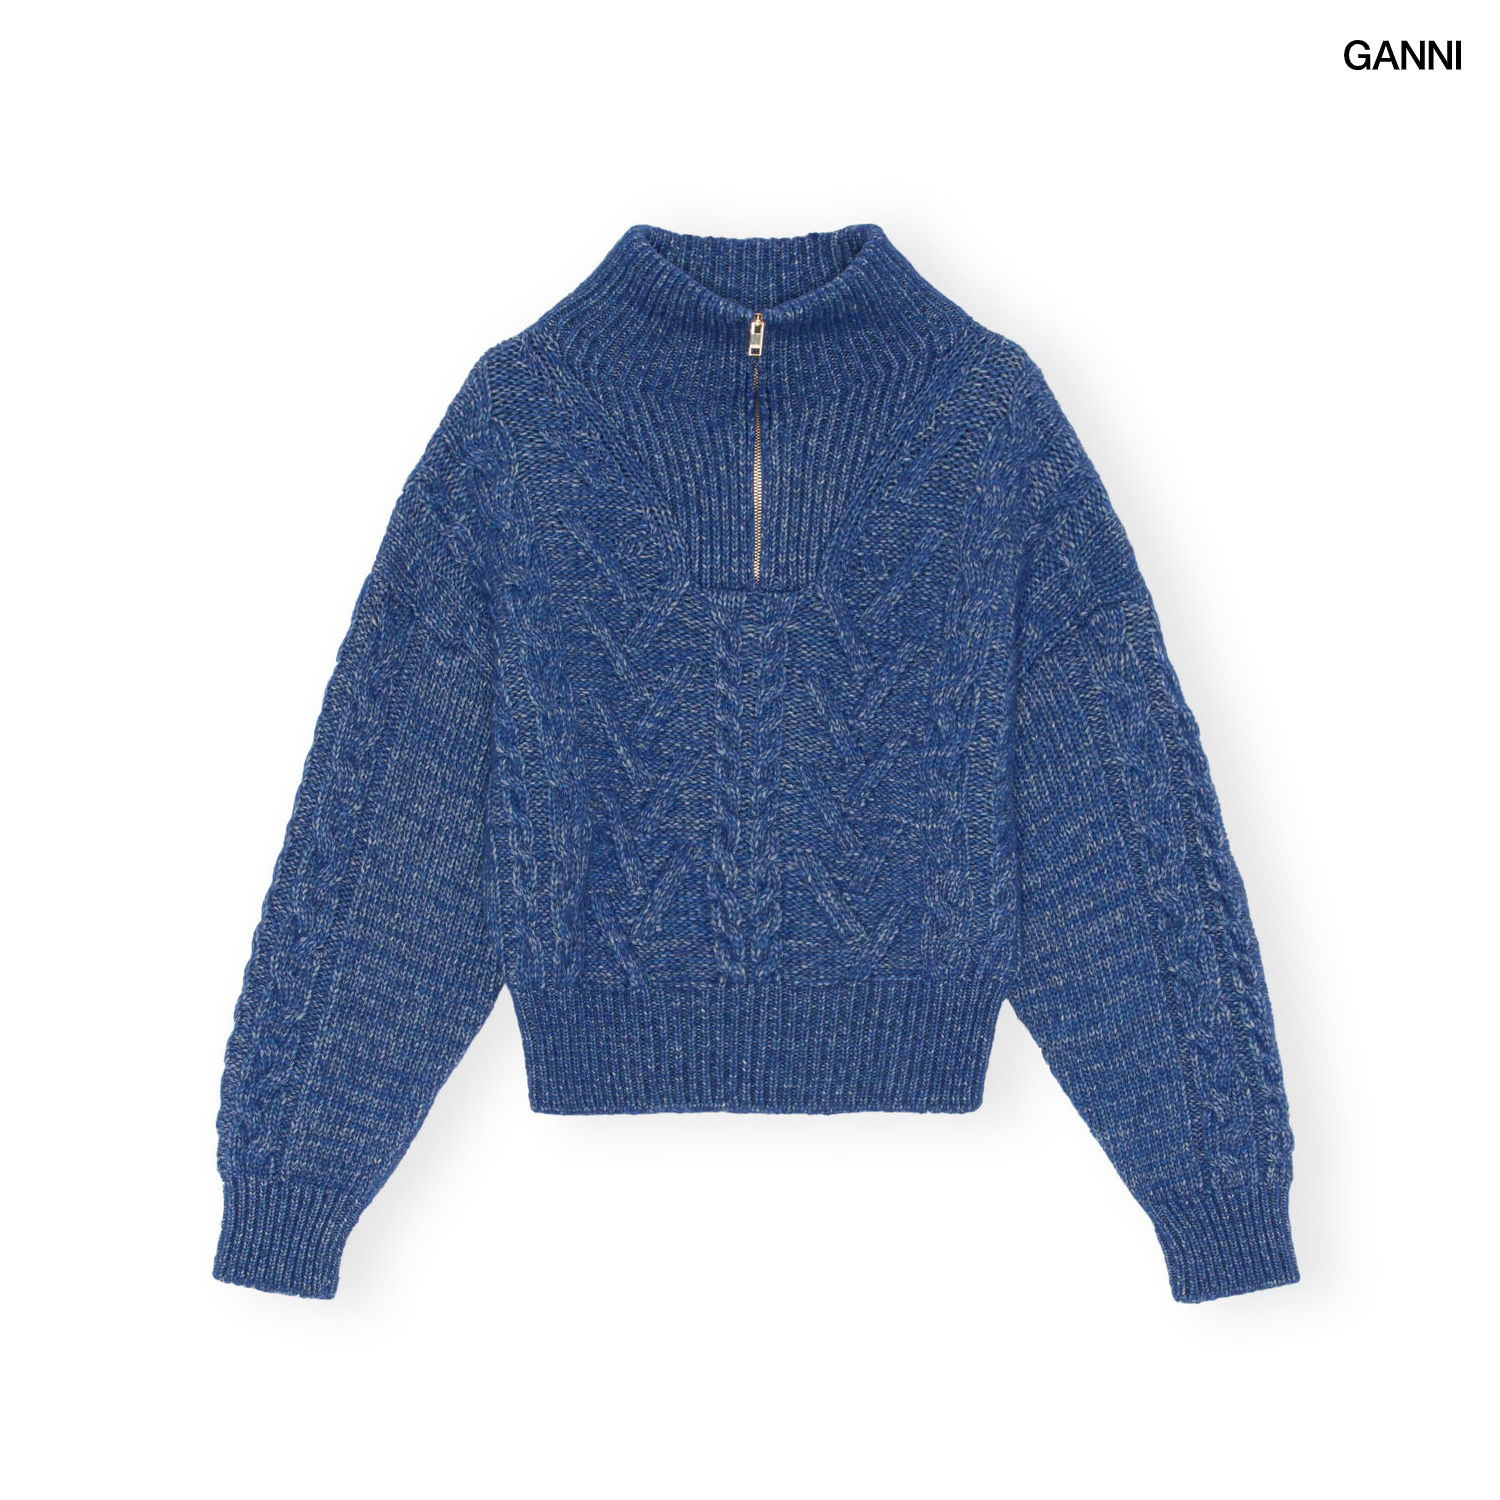 [해외]가니 GANNI 캐이블 니트 청키 스웨터 블루